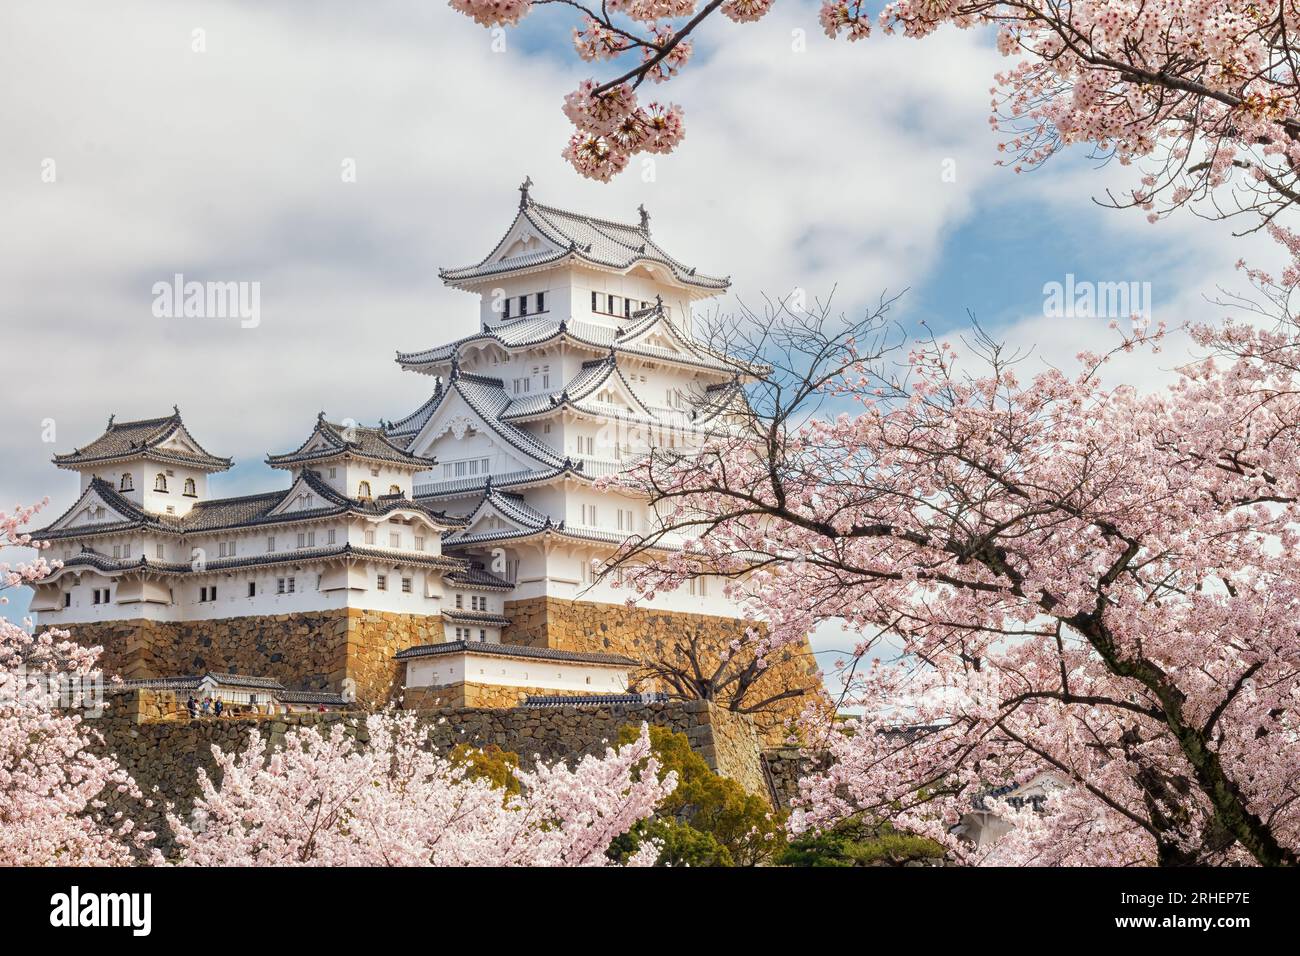 Château de Himeji en fleurs de cerisier, Himeji, préfecture de Hyōgo, Japon Banque D'Images